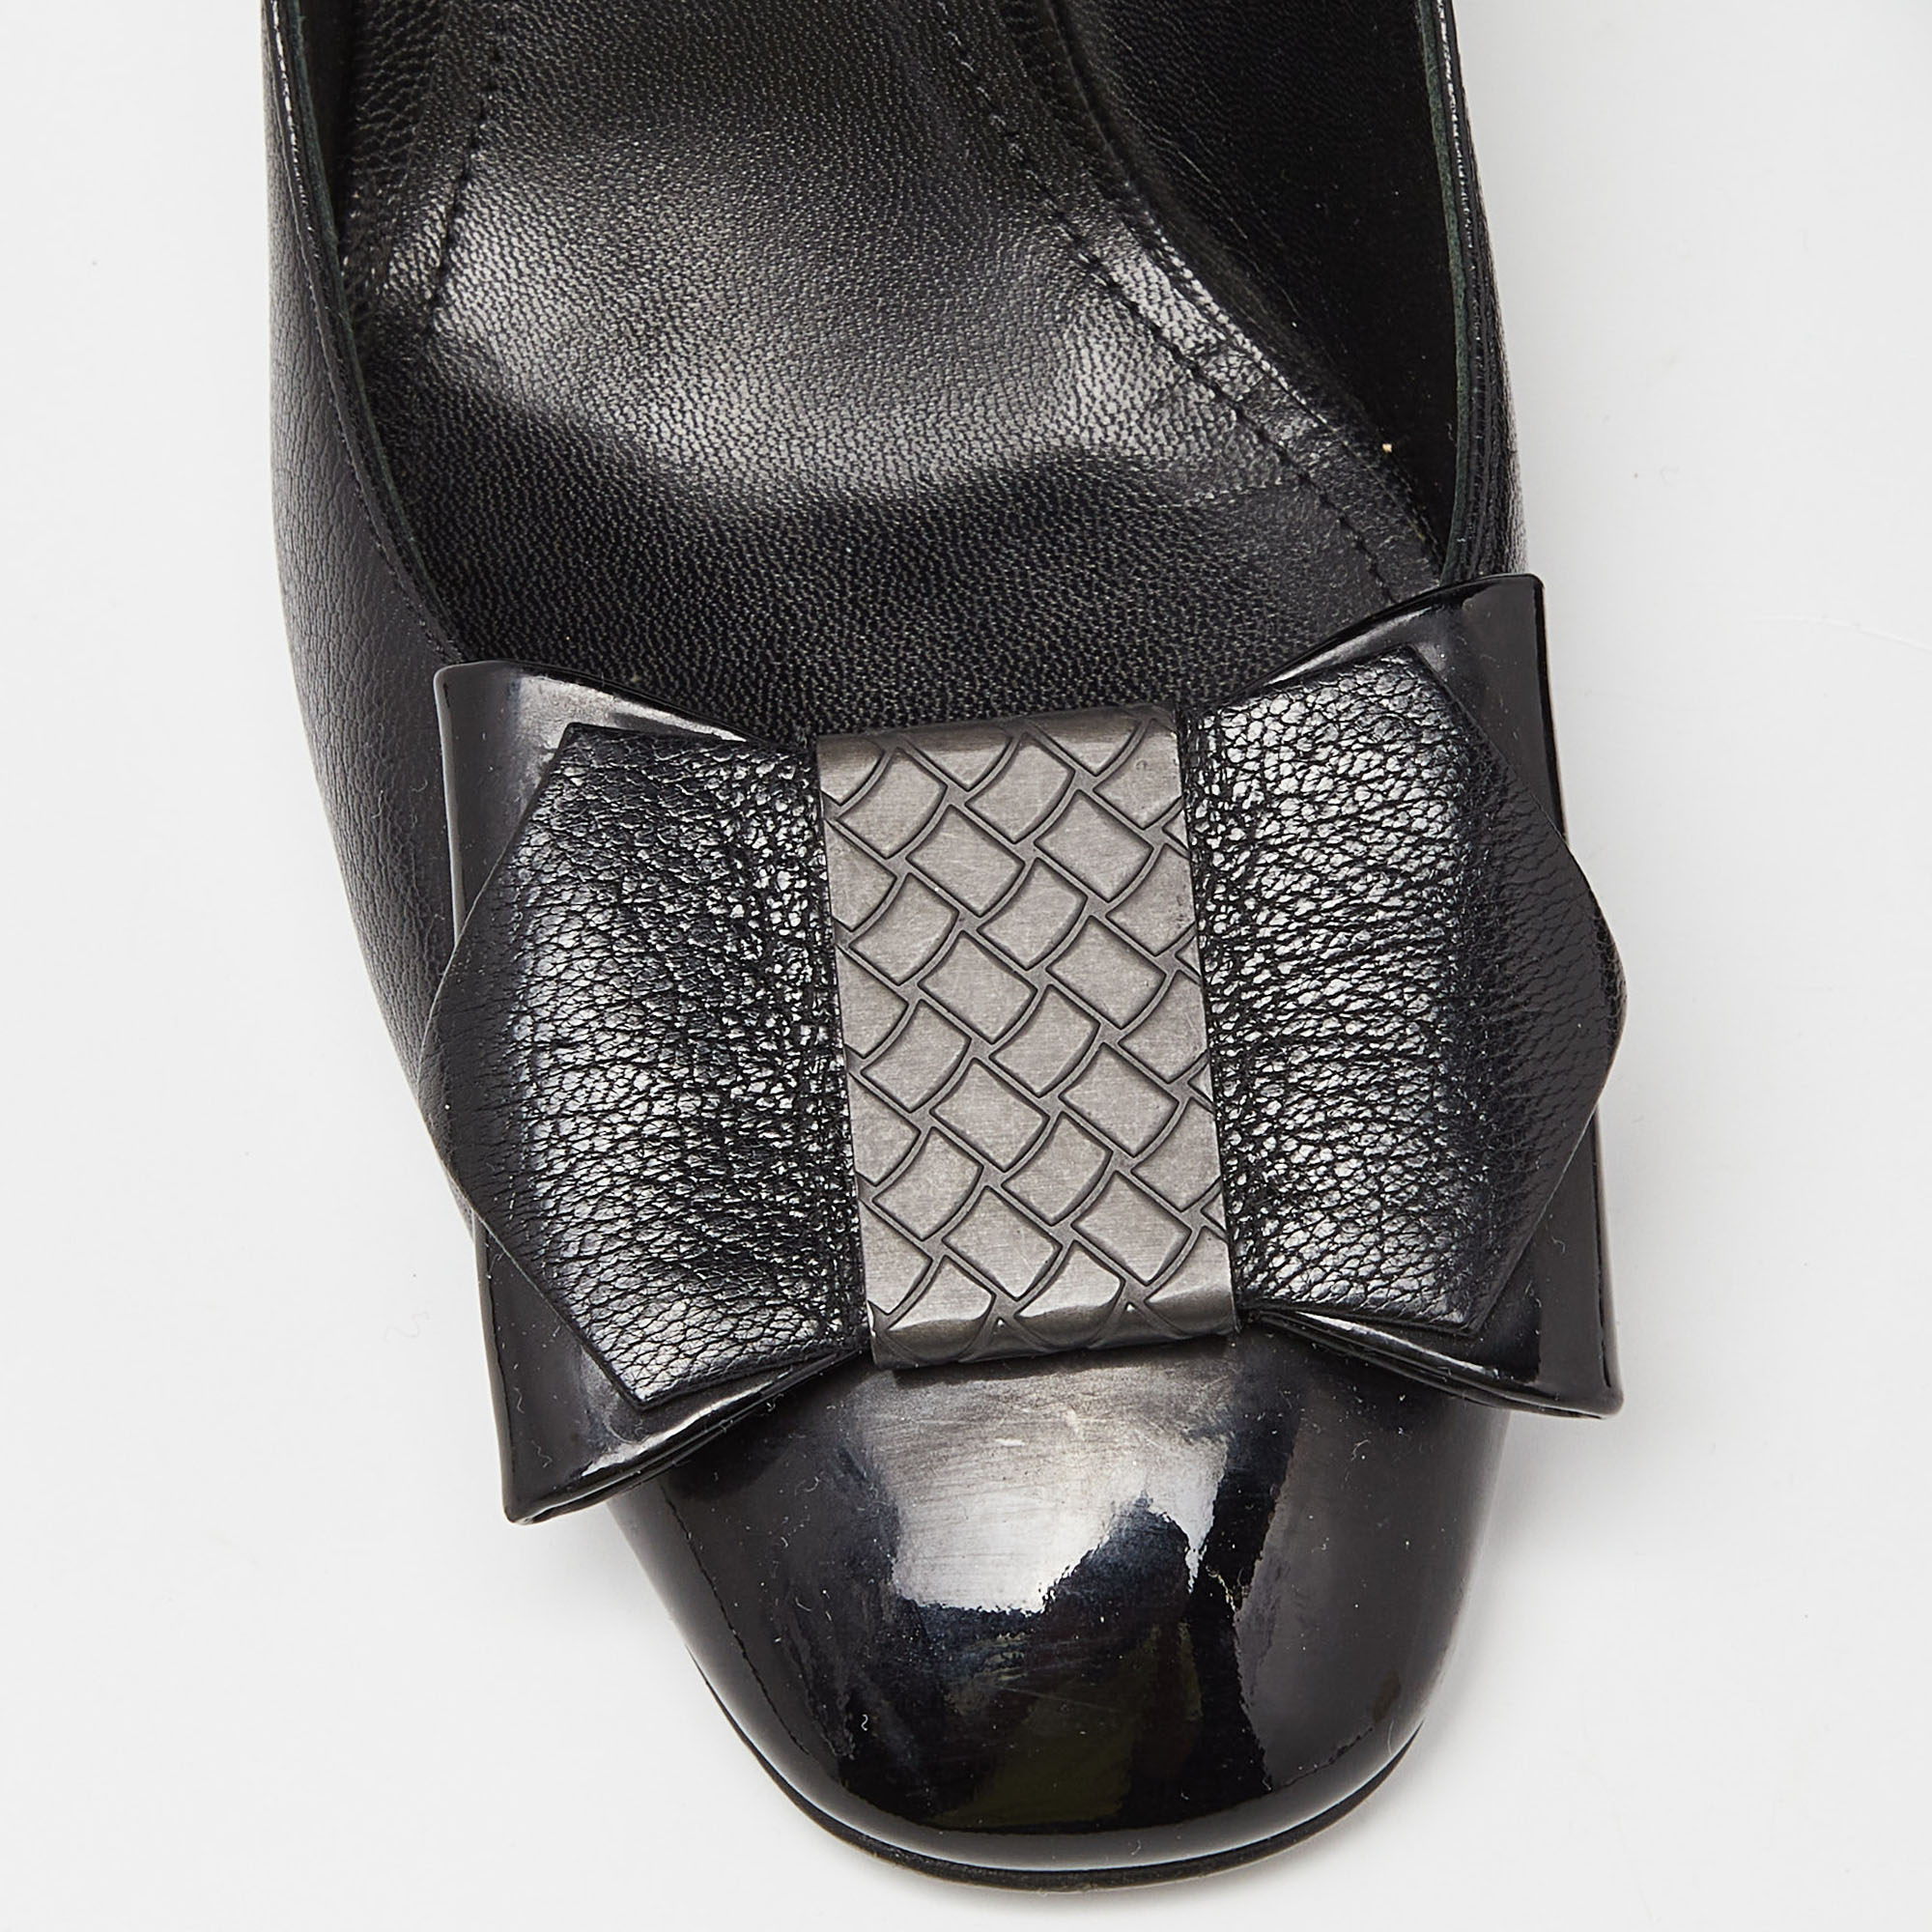 Bottega Veneta Black Leather And Patent Cap Toe Bow Pumps Size 38.5